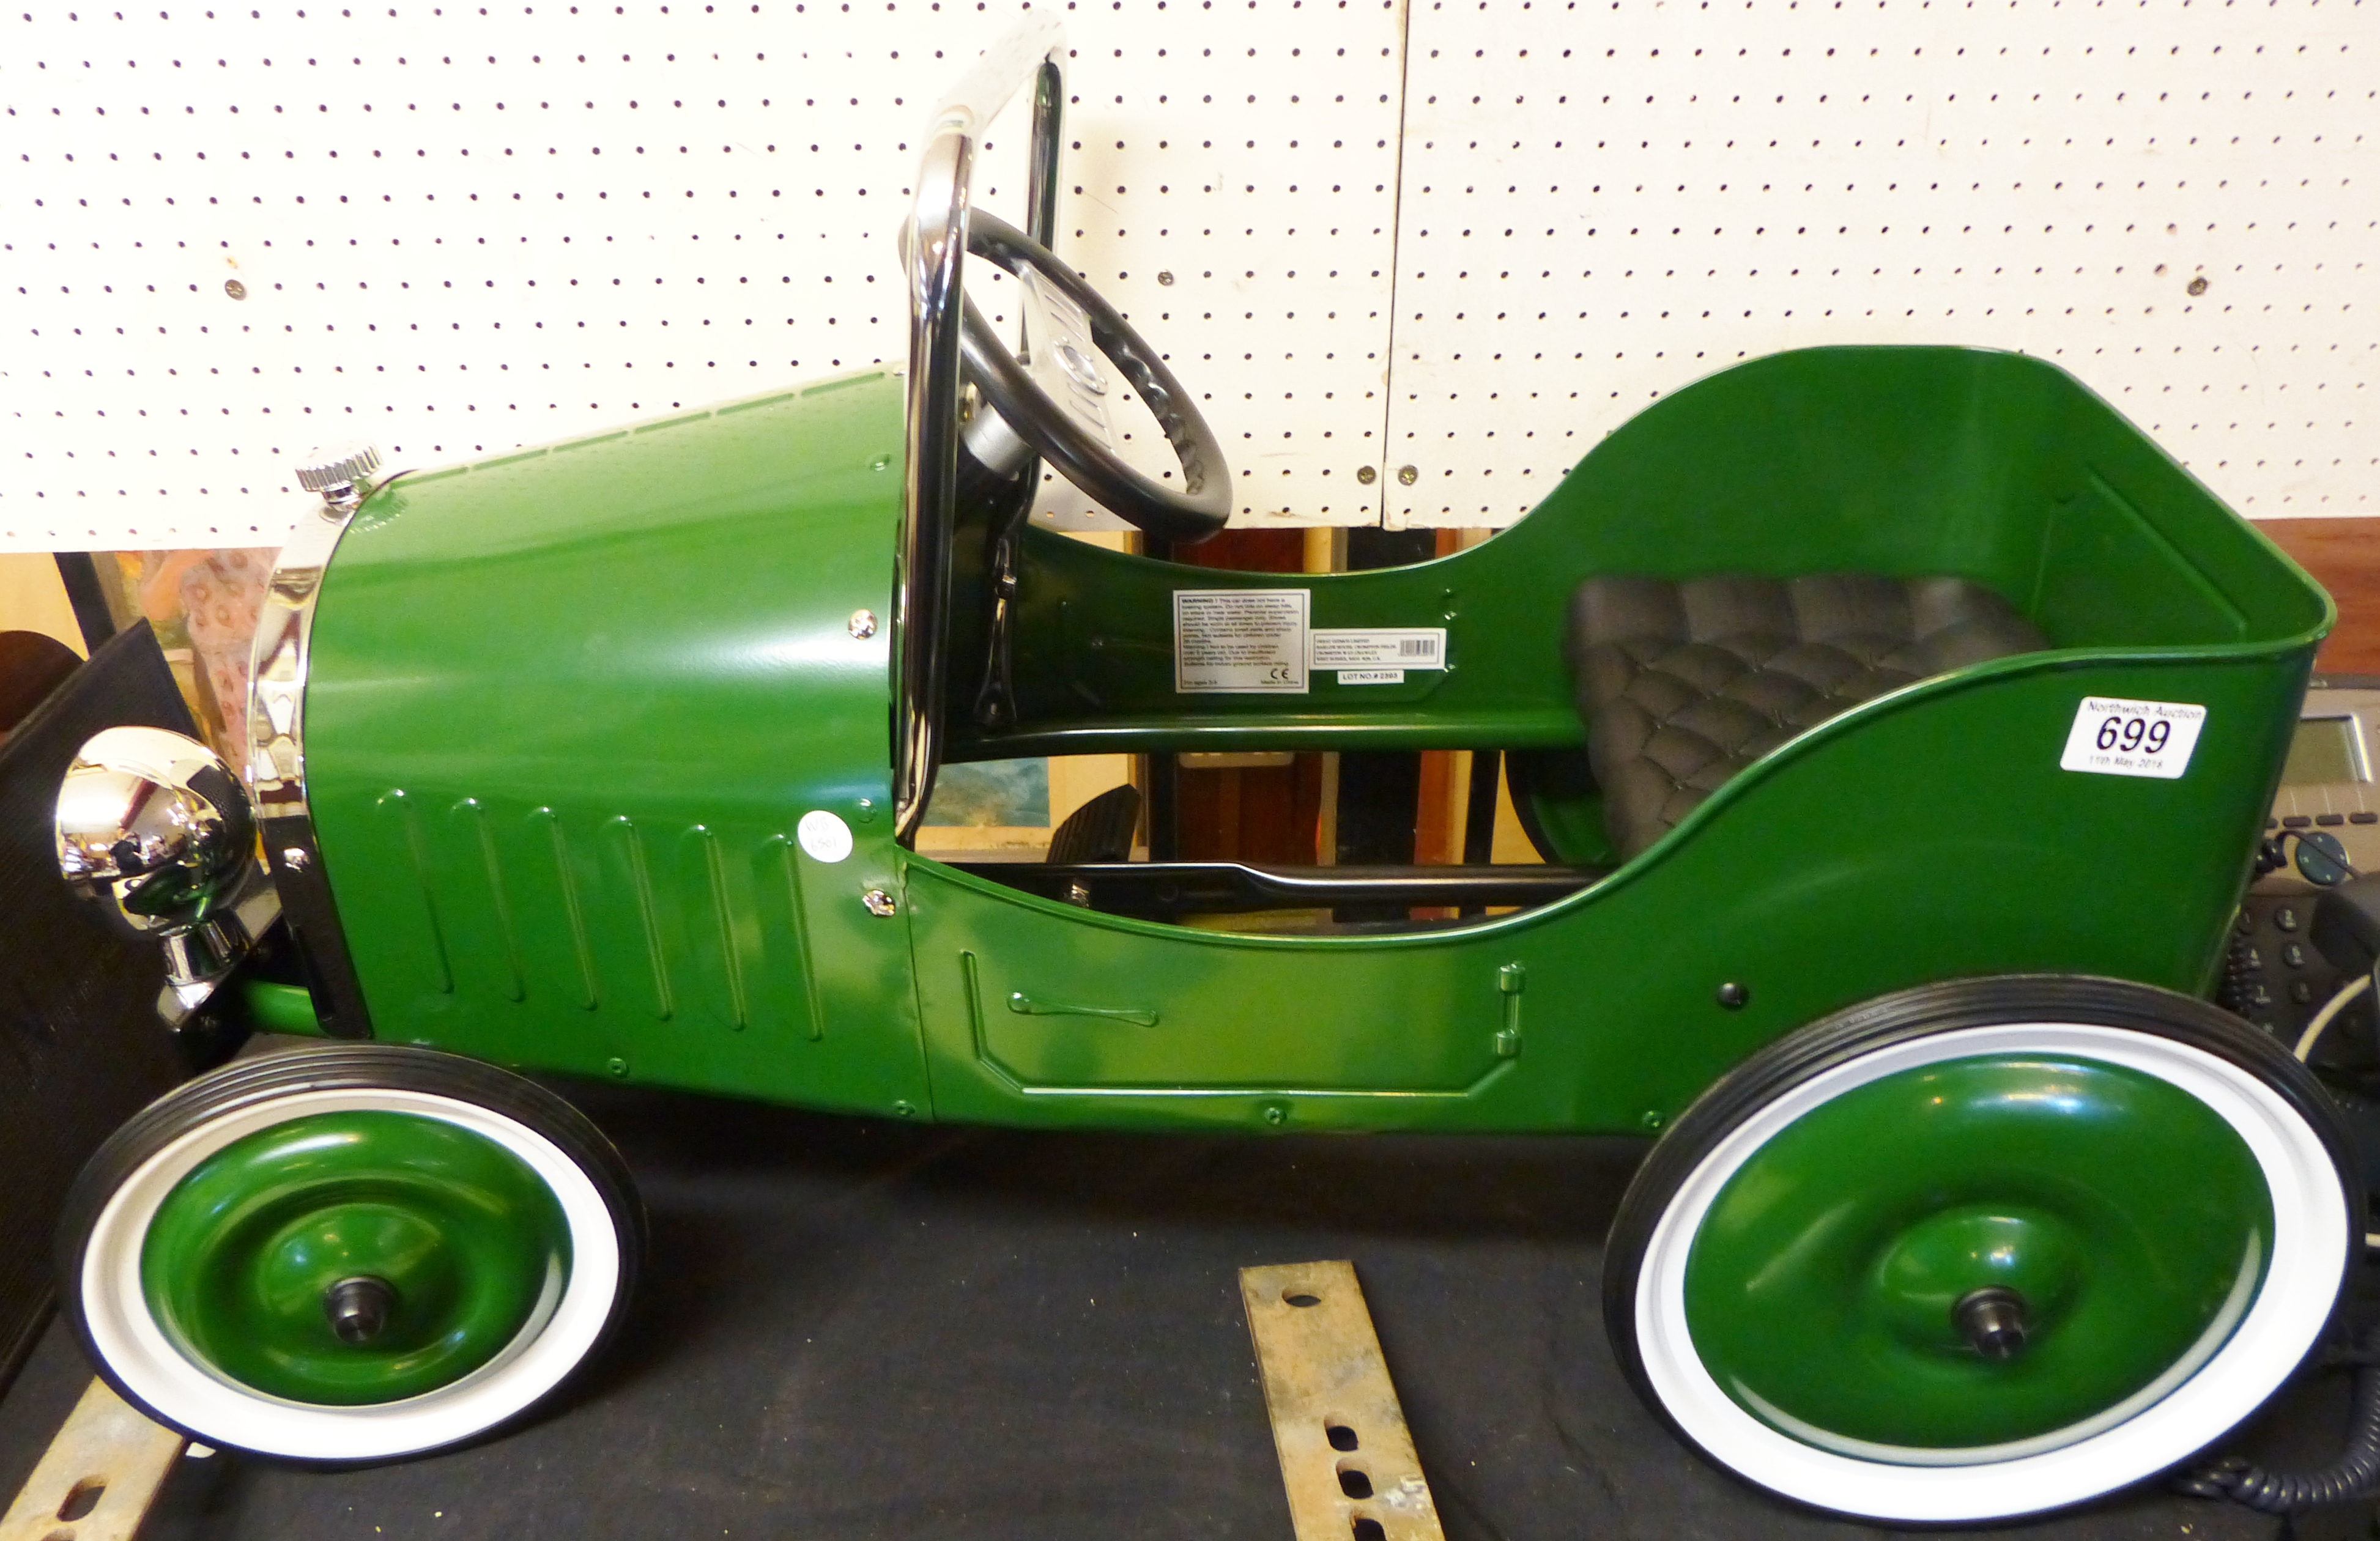 PEDAL CAR. Childs toy pedal car, L ~ 26cm